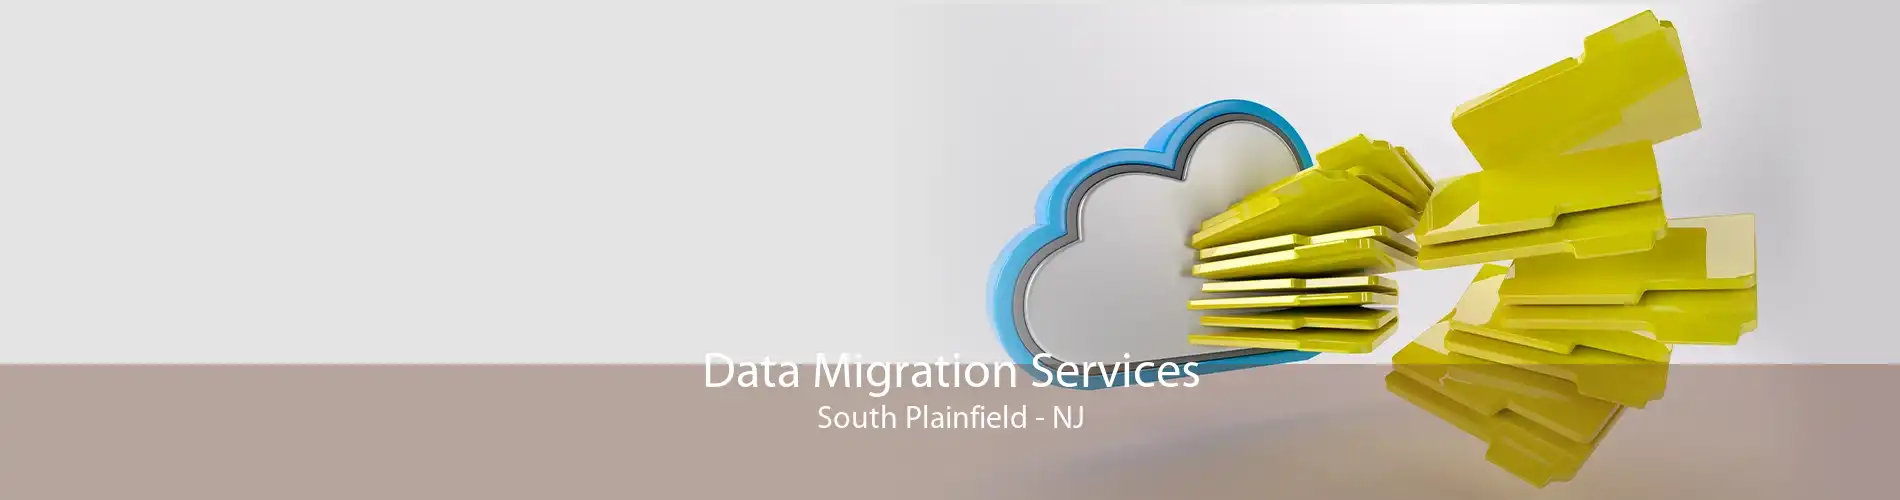 Data Migration Services South Plainfield - NJ